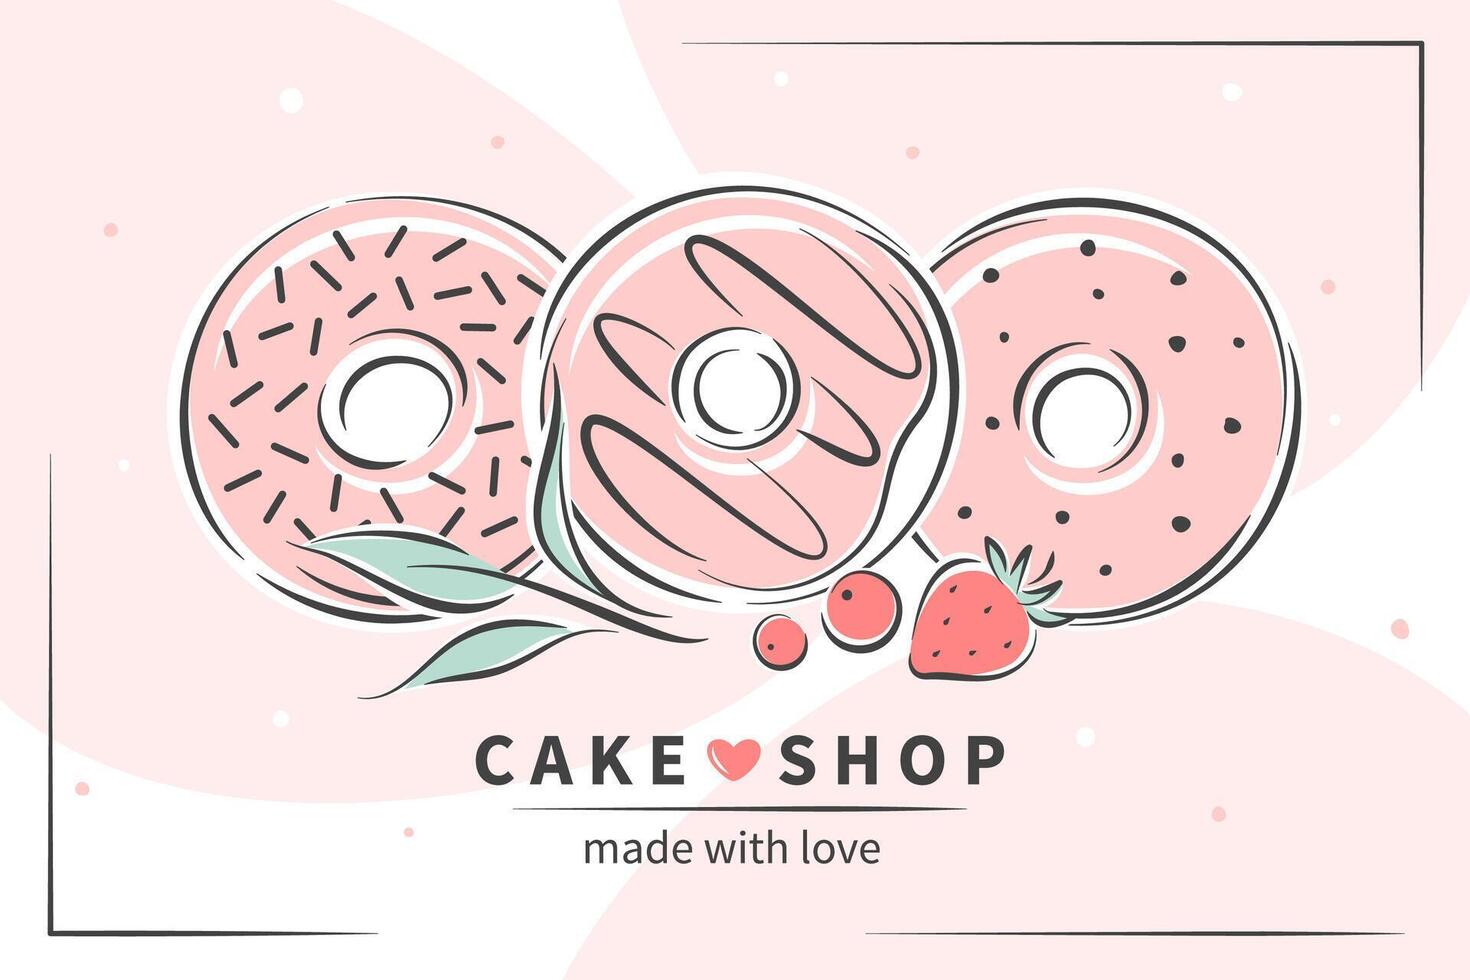 taart en brood winkel logo. donuts en bessen. vector illustratie voor logo, menu, recept boek, bakken winkel, cafe, restaurant.